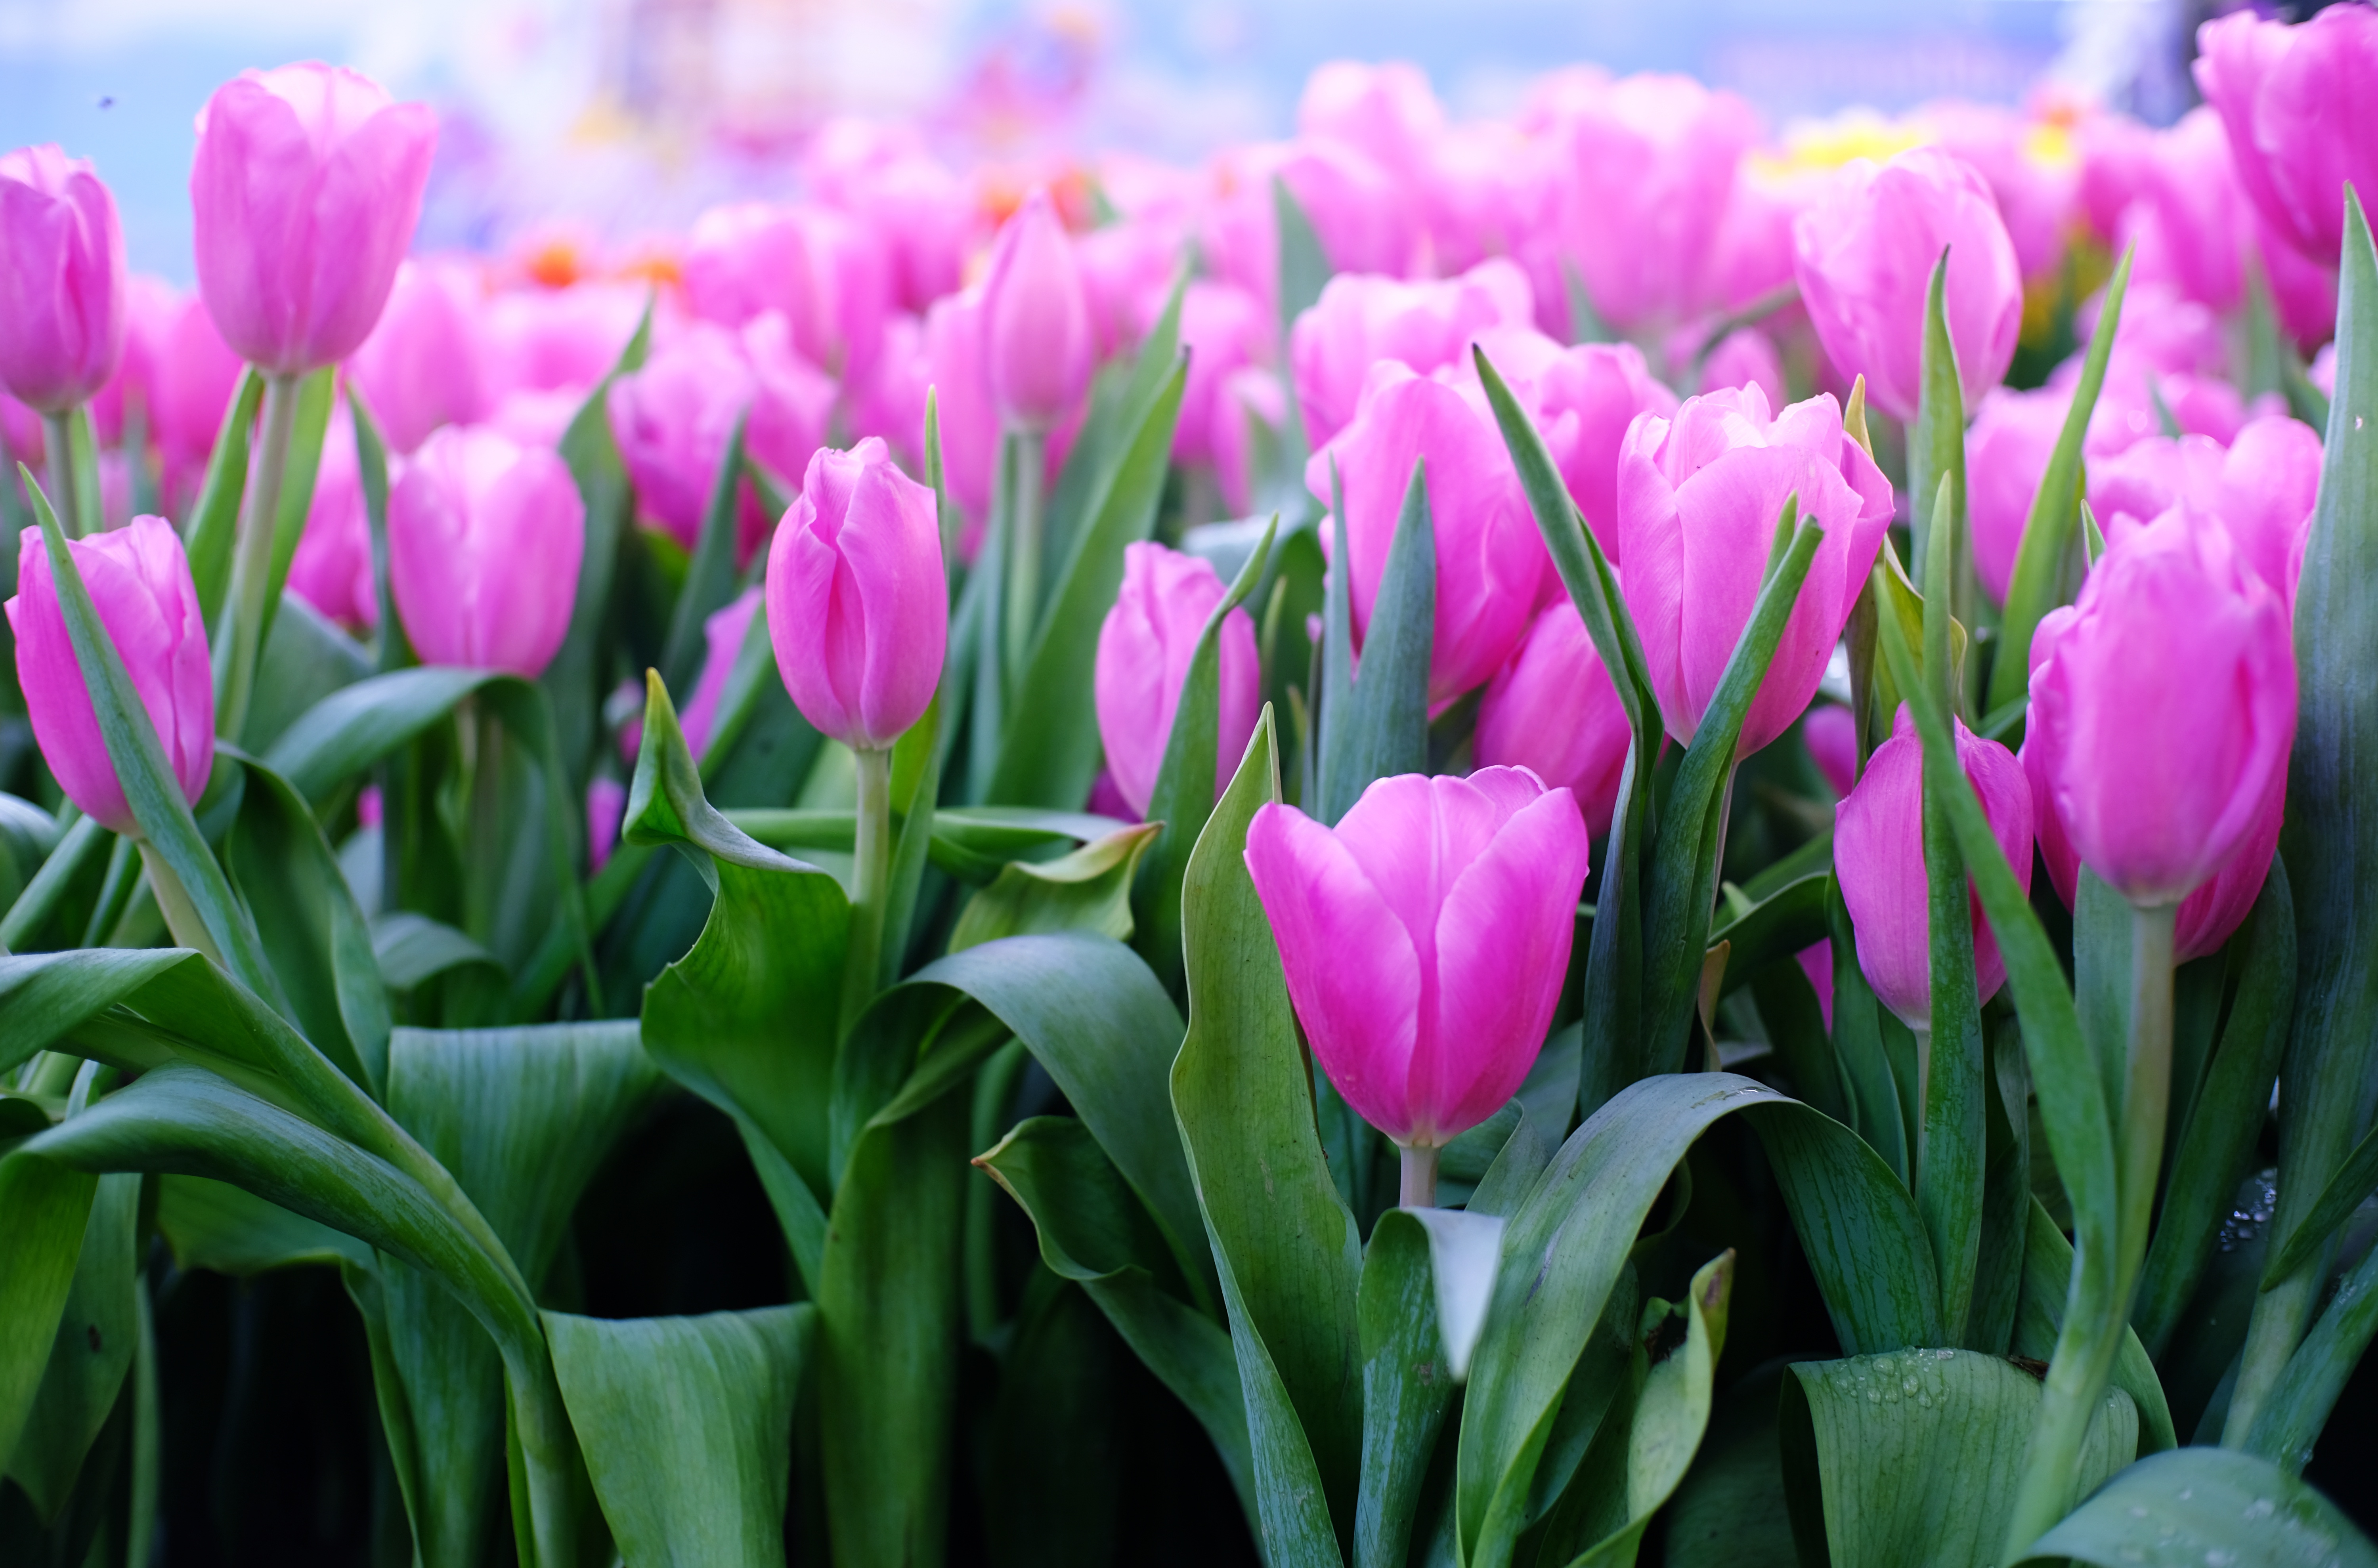 Hình nền : 4500x3600 px, Nhiều, Hoa tulip 4500x3600 - wallup - 1746019 - Hình  nền đẹp hd - WallHere